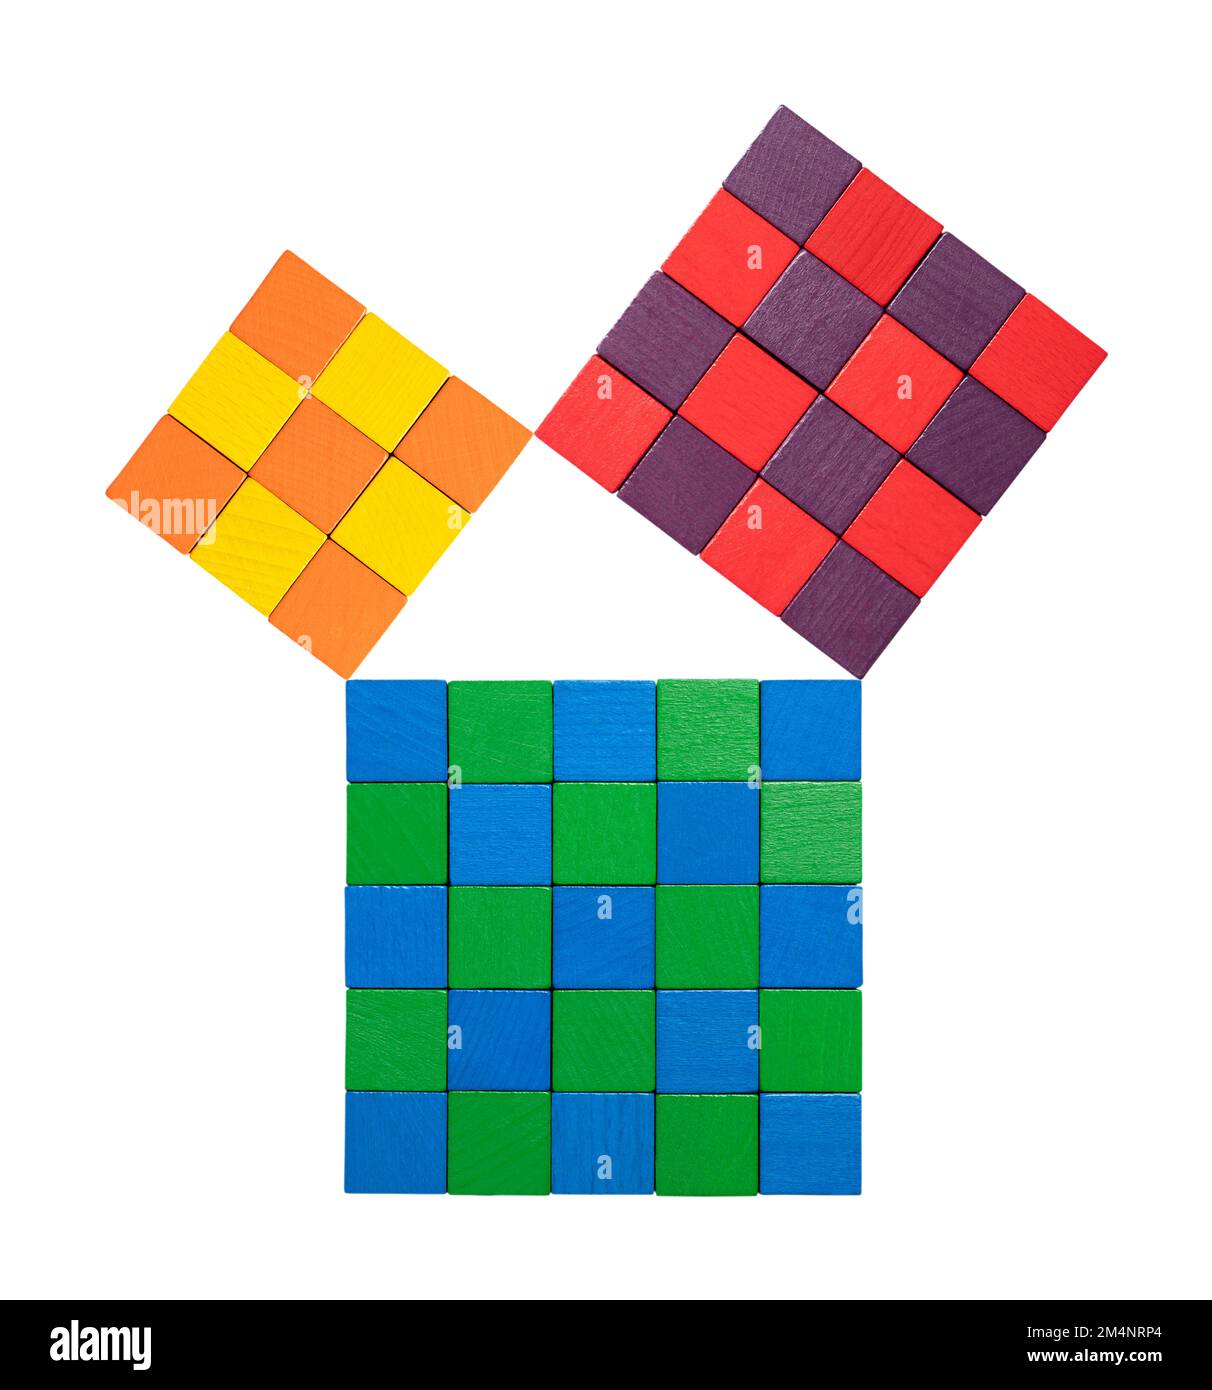 Théorème pythagore, illustré avec des cubes en bois colorés subdivisés. Relation des côtés d'un triangle de droite. Isolé, du dessus. Banque D'Images